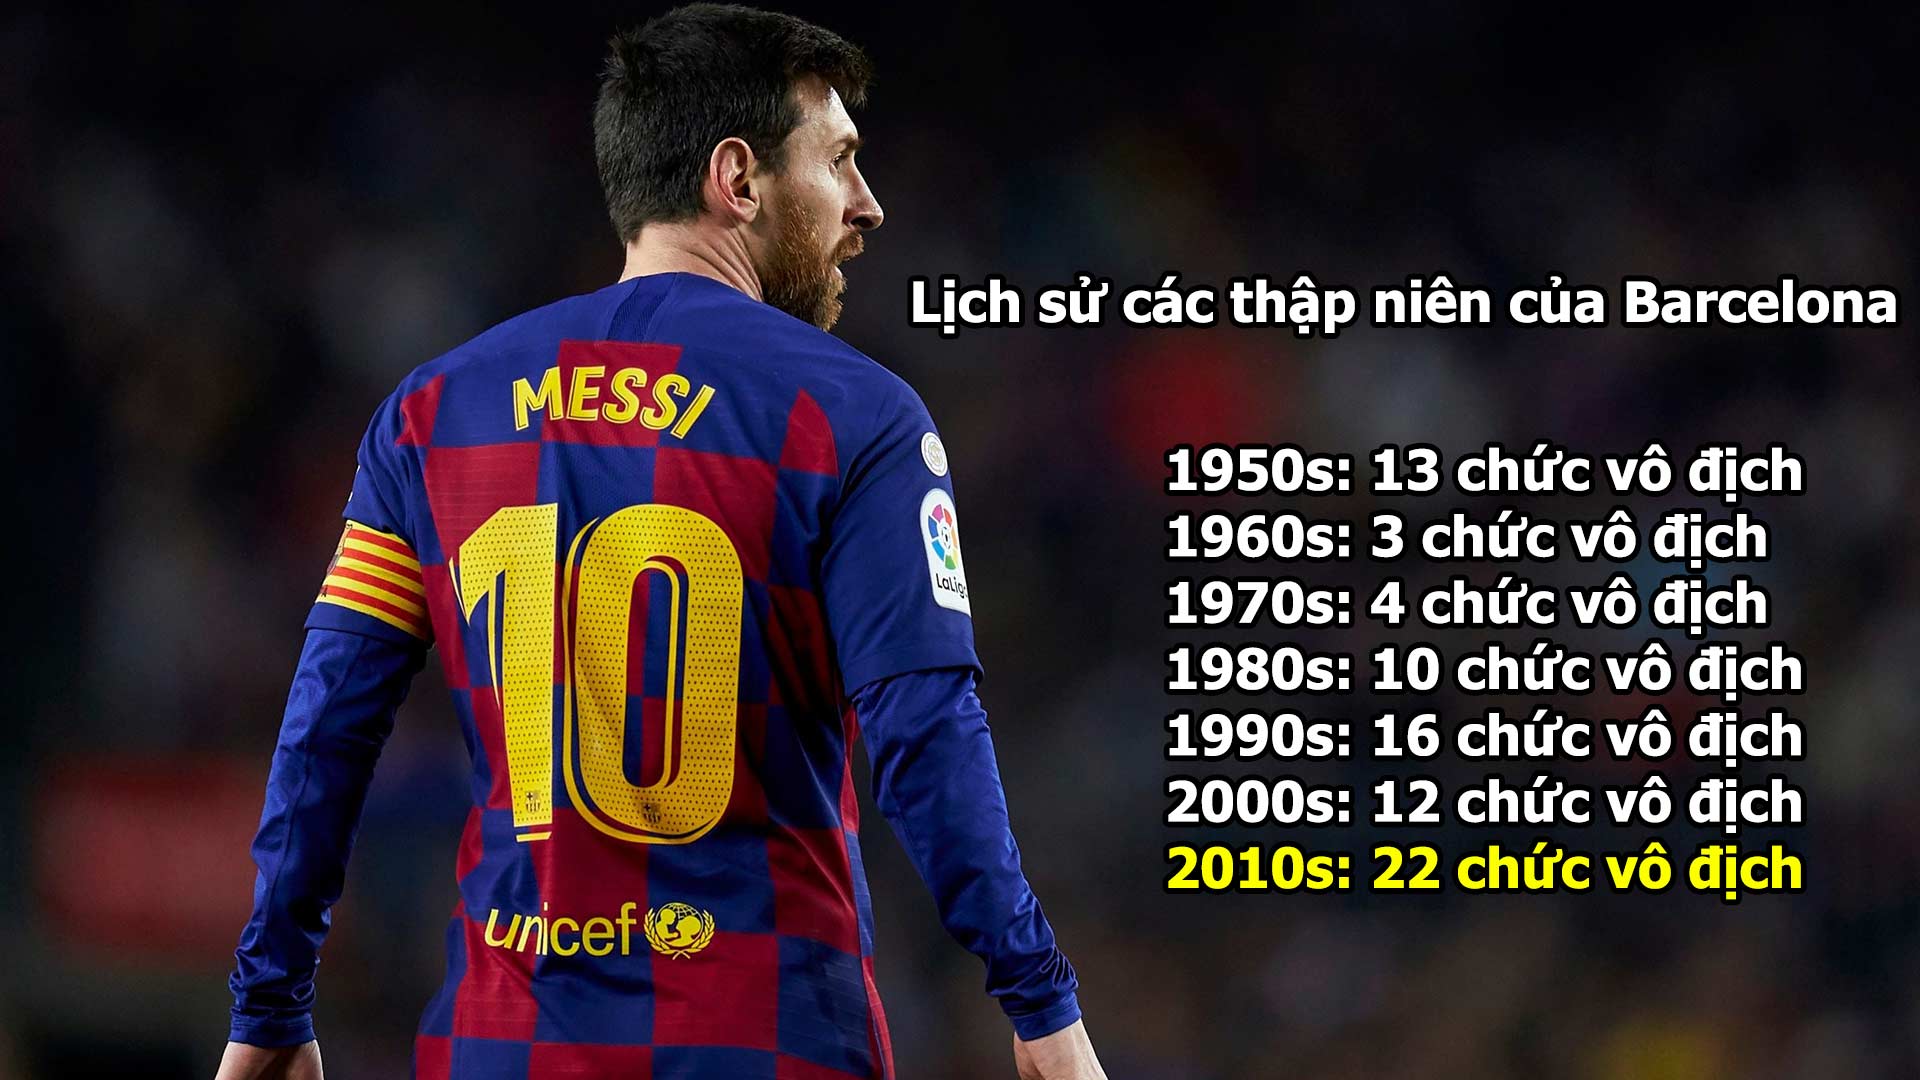 Messi ở lại làm “vua” tại Barca: Tôn vinh những giá trị vĩ đại - 13